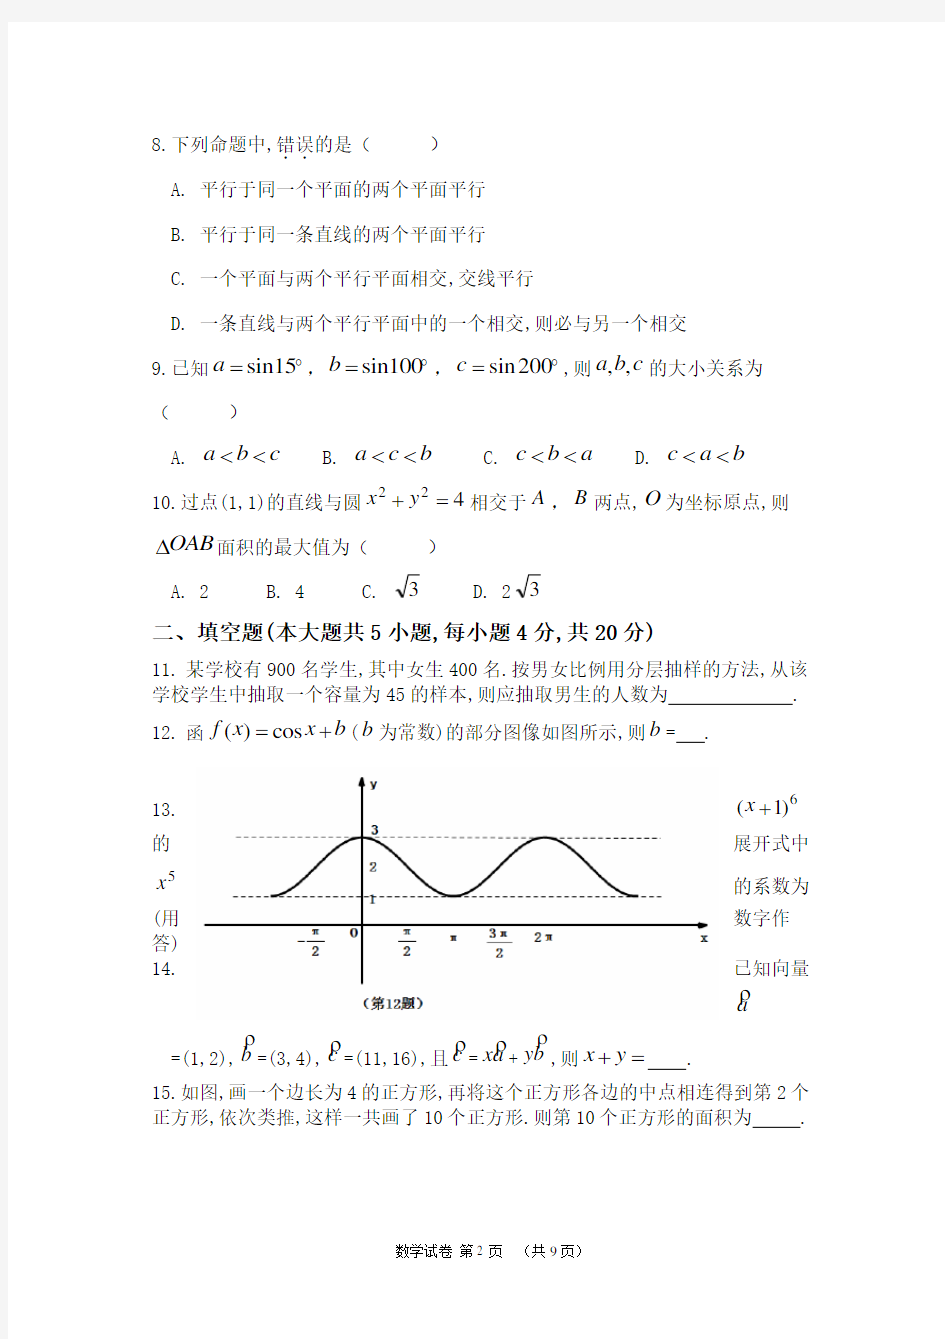 (完整word版)湖南省2018年高考对口招生考试数学真题及参考答案